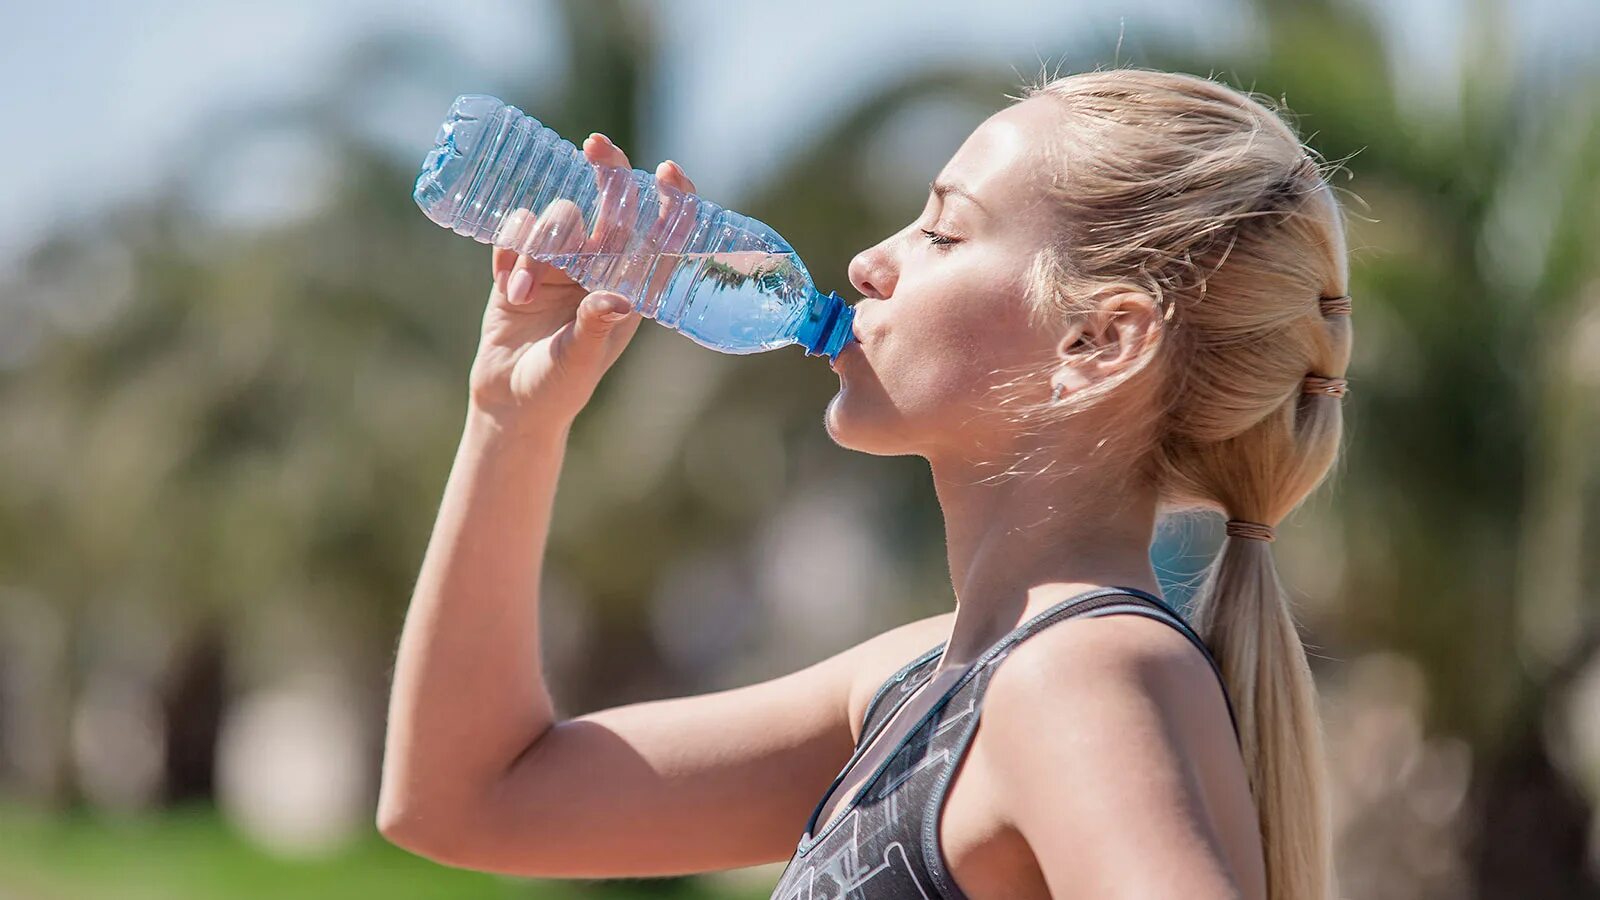 Появилась сильная жажда. Девушка пьет воду. Девушка пьет воду из бутылки. Питьевой режим. Жевушкк пьет из бутылки.